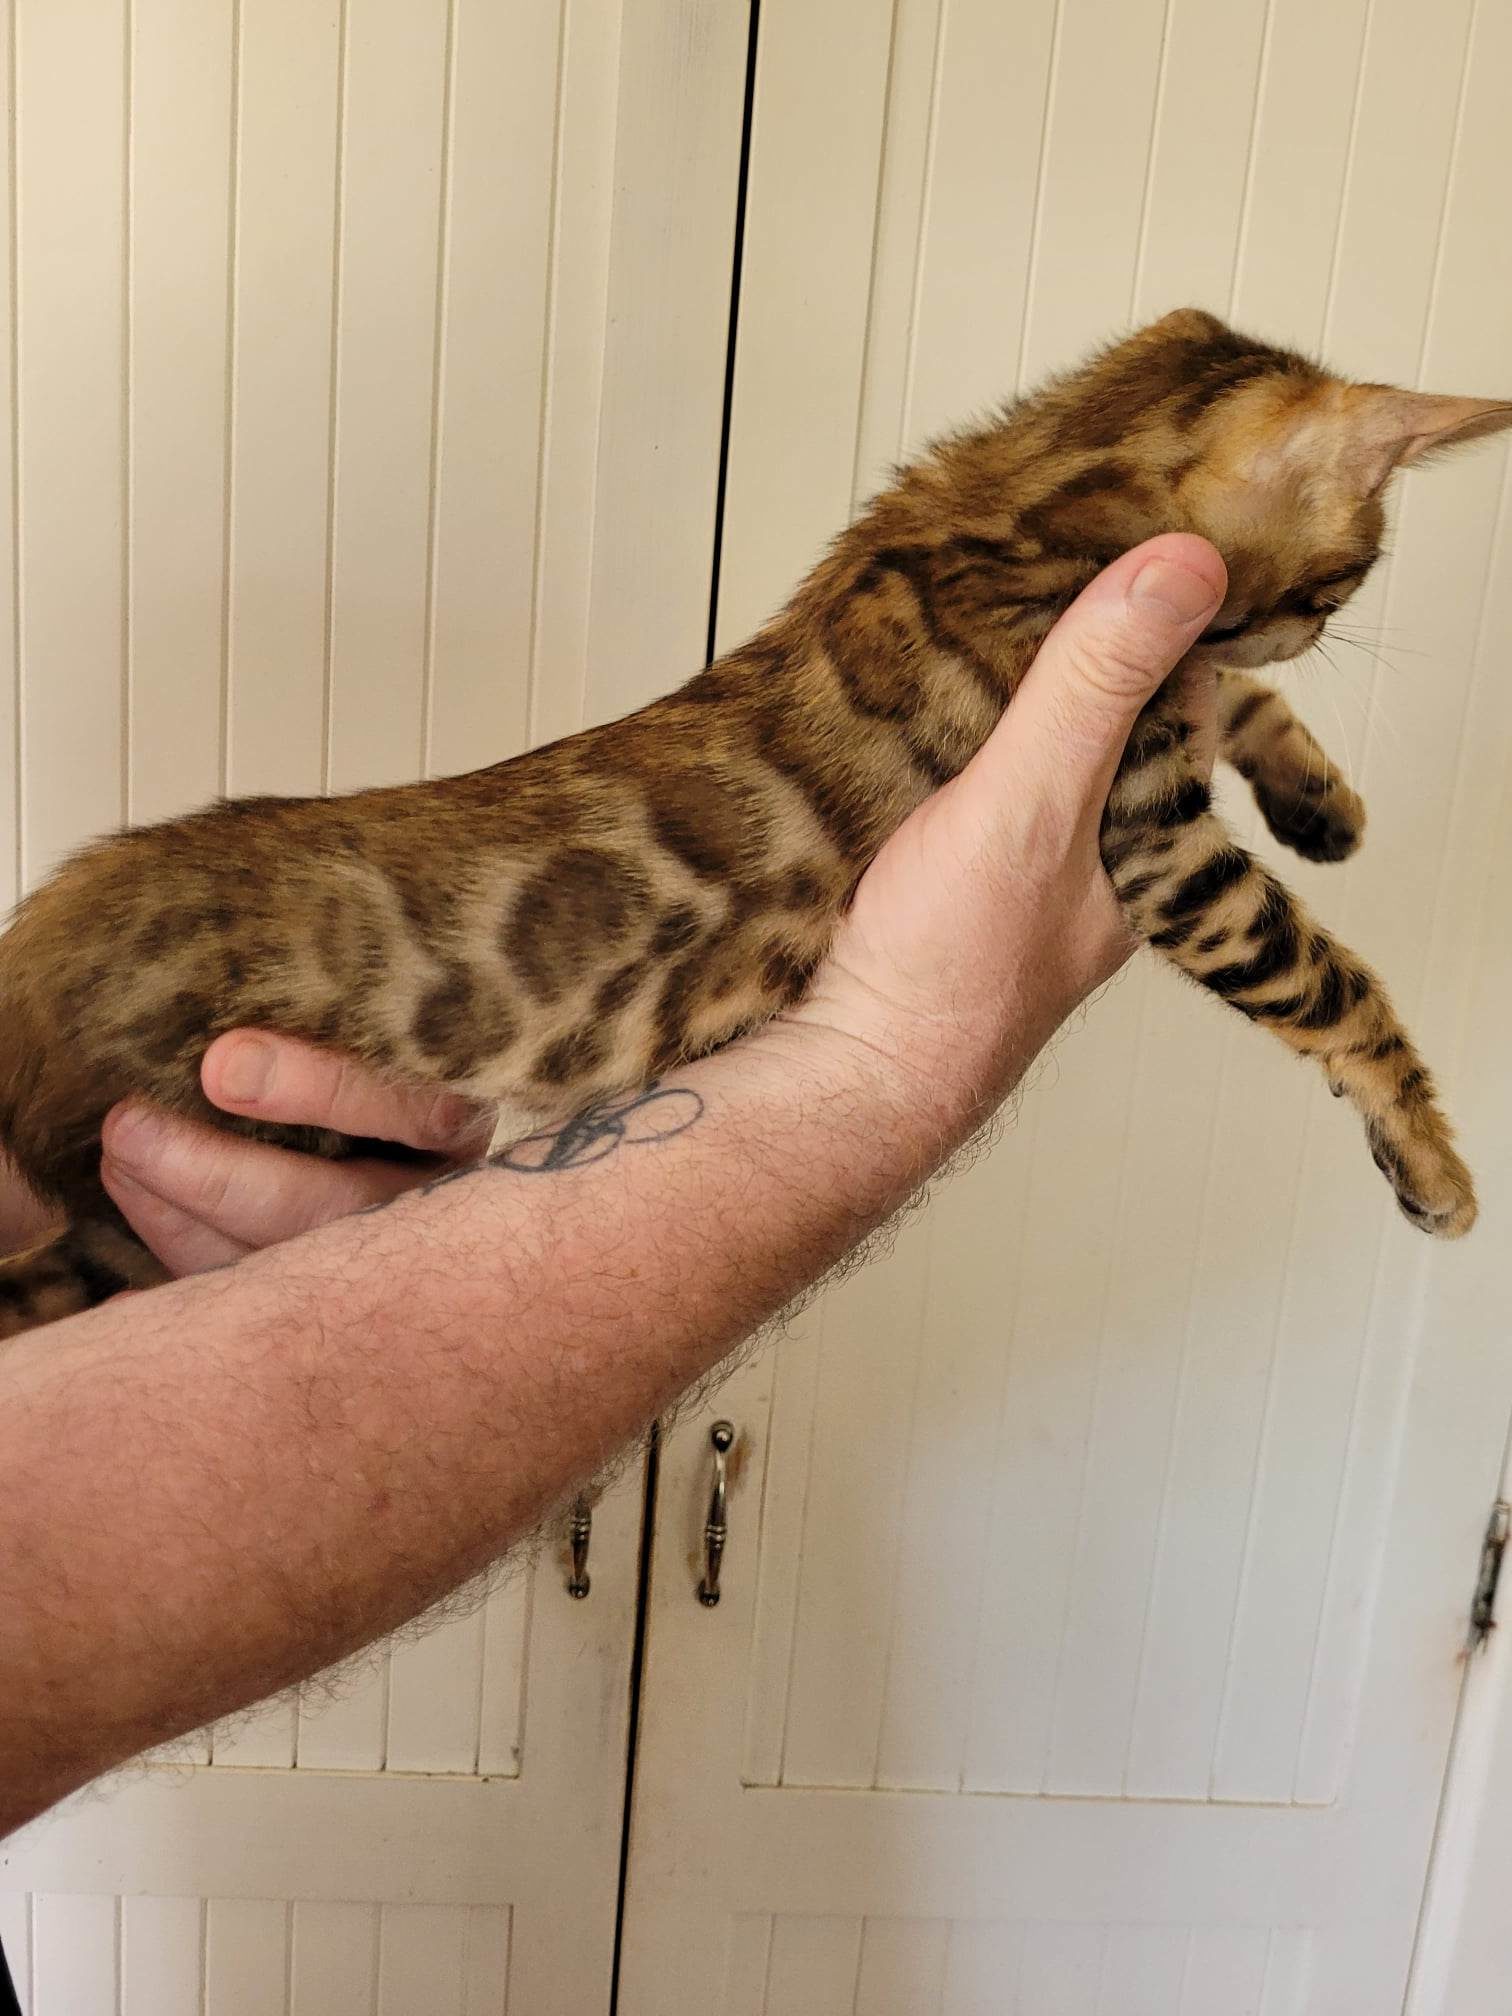 Photo 2 of Rambo- Sold the Bengal kitten.